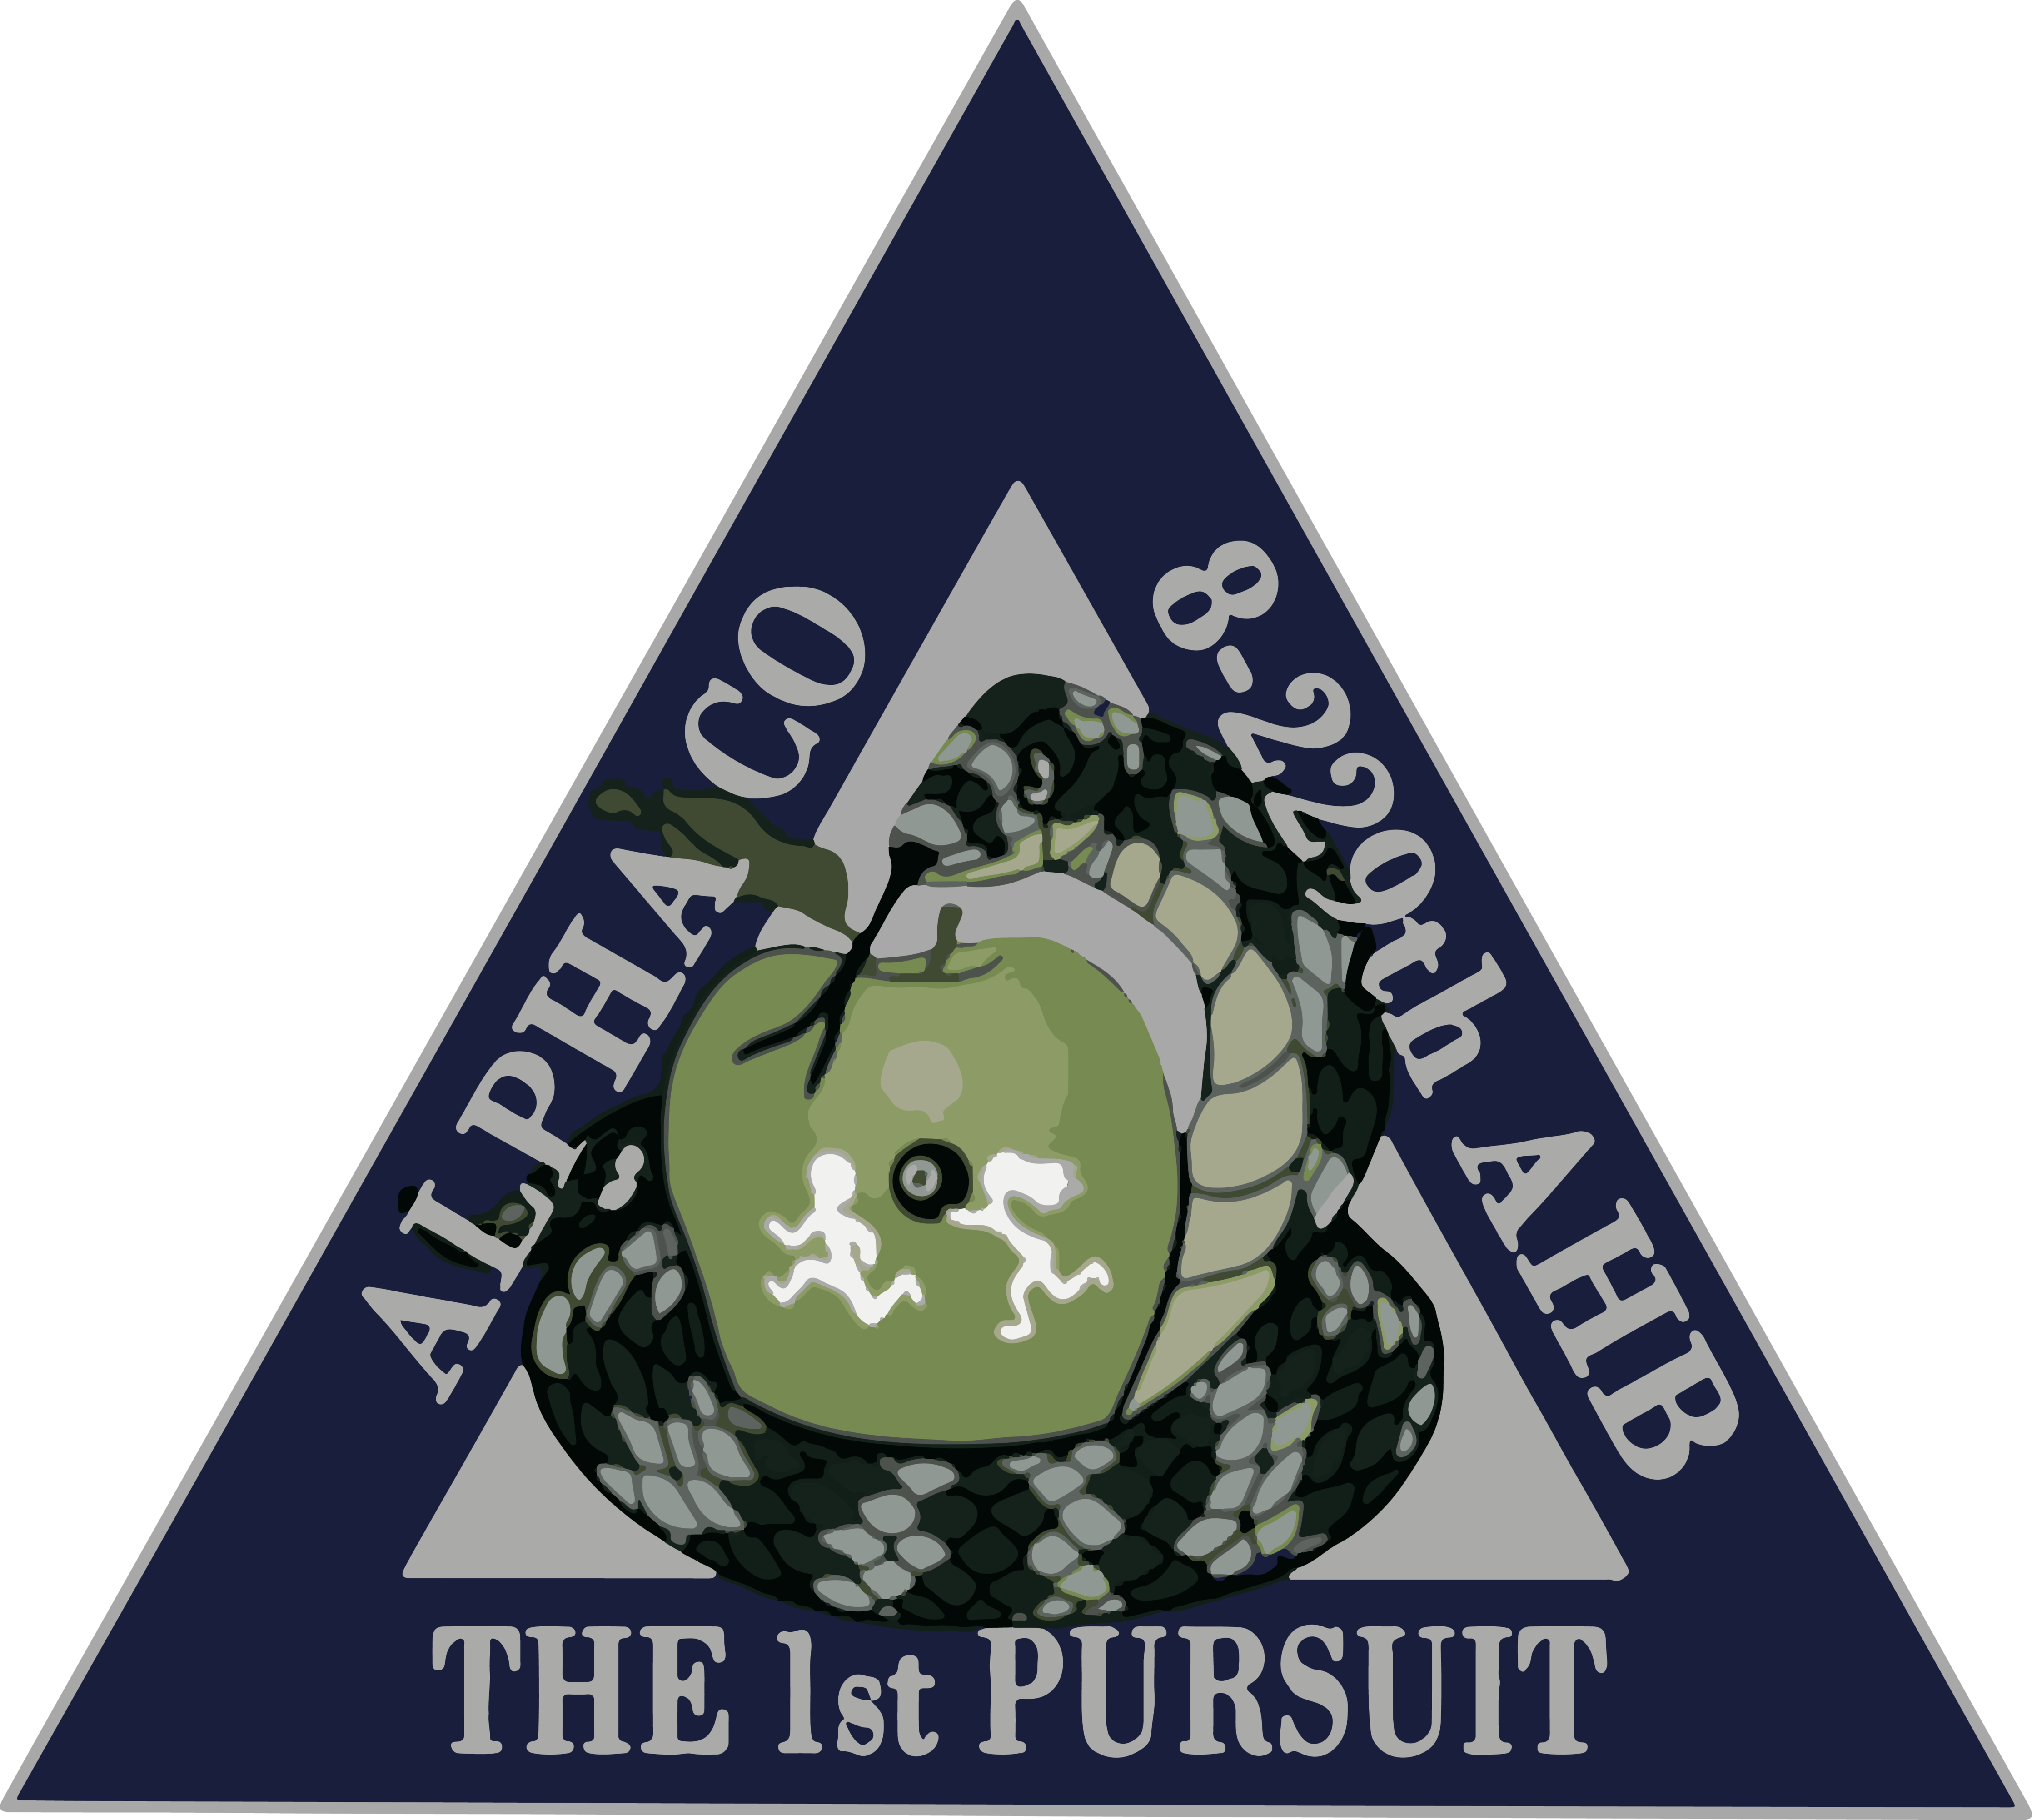 A Co, 8-229 AHB "The 1st Pursuit"